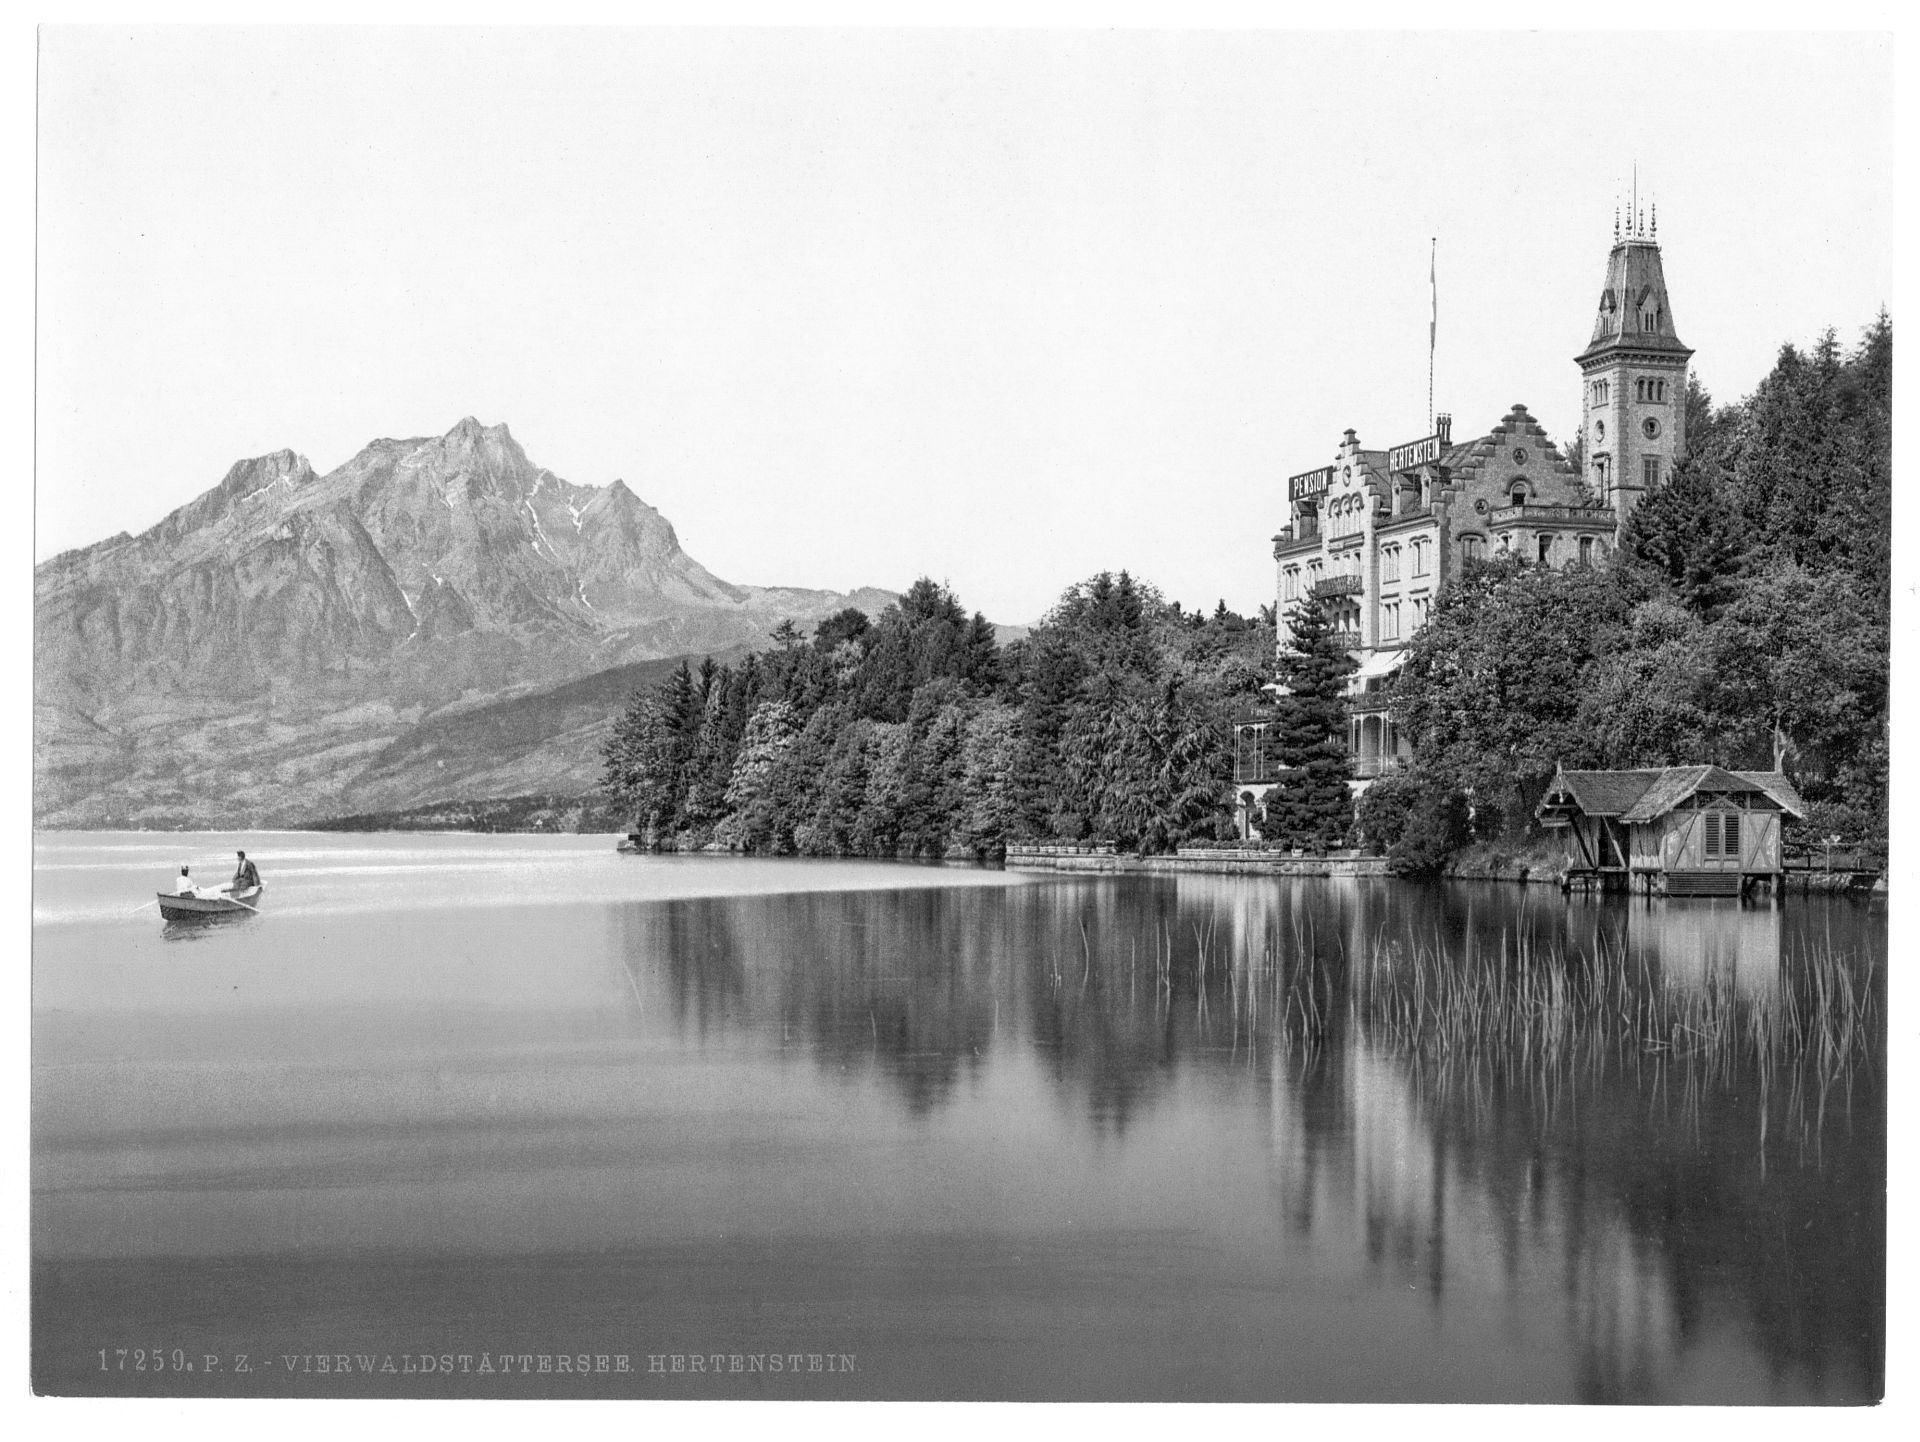 Hertenstein Schloss, Lake Lucerne, Switzerland